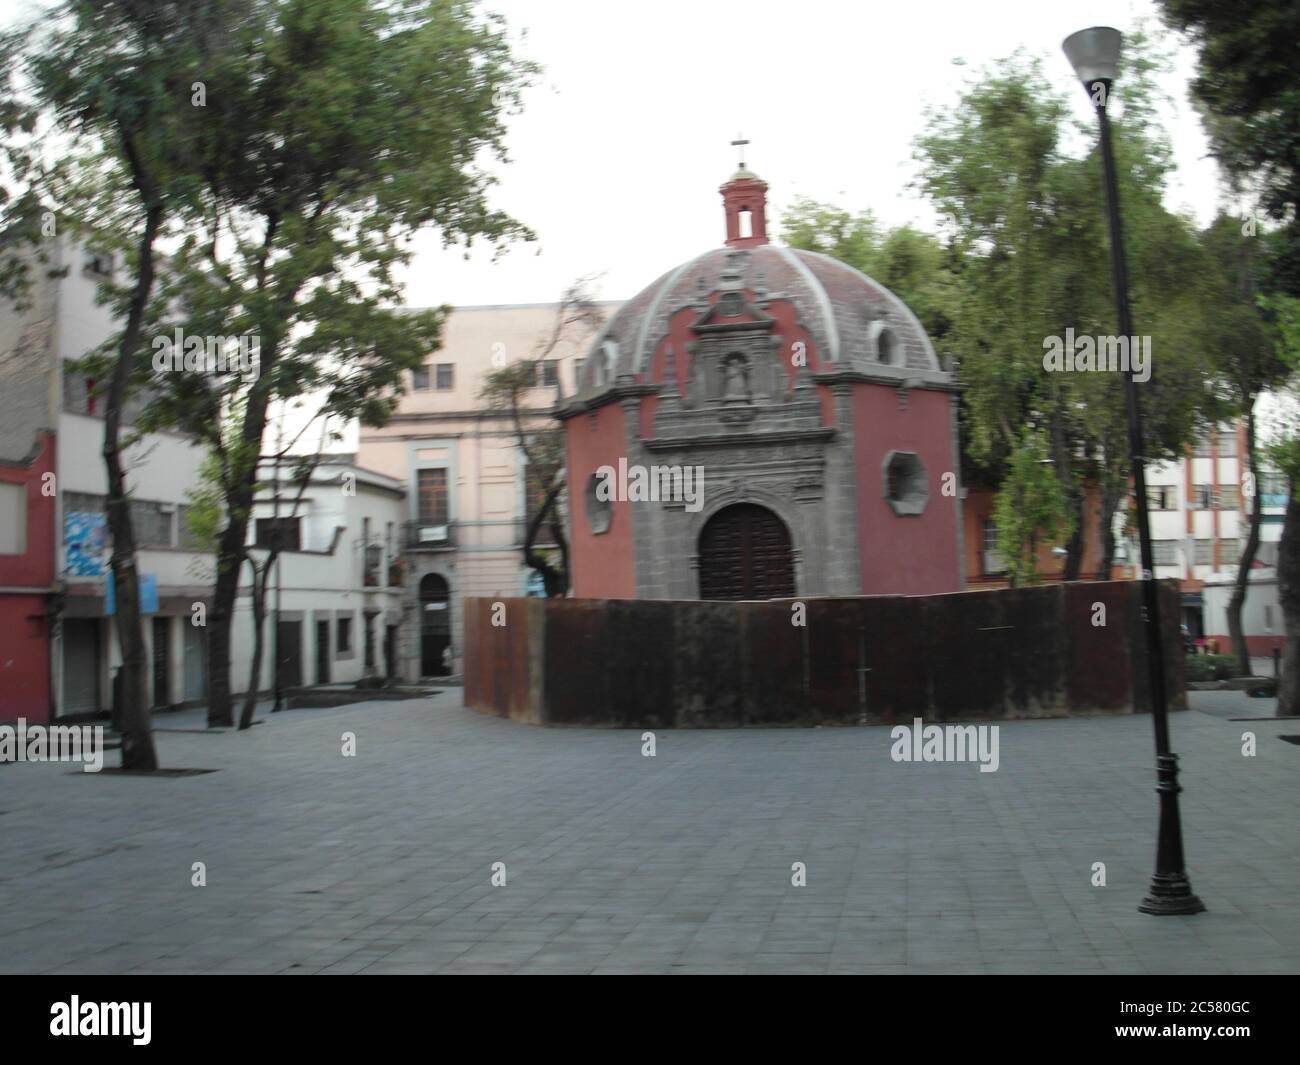 Mexico est vivant et très belle! Architecture inhabituelle de l'Amérique latine, motifs espagnols et rues merveilleuses. Aucun filtre Banque D'Images